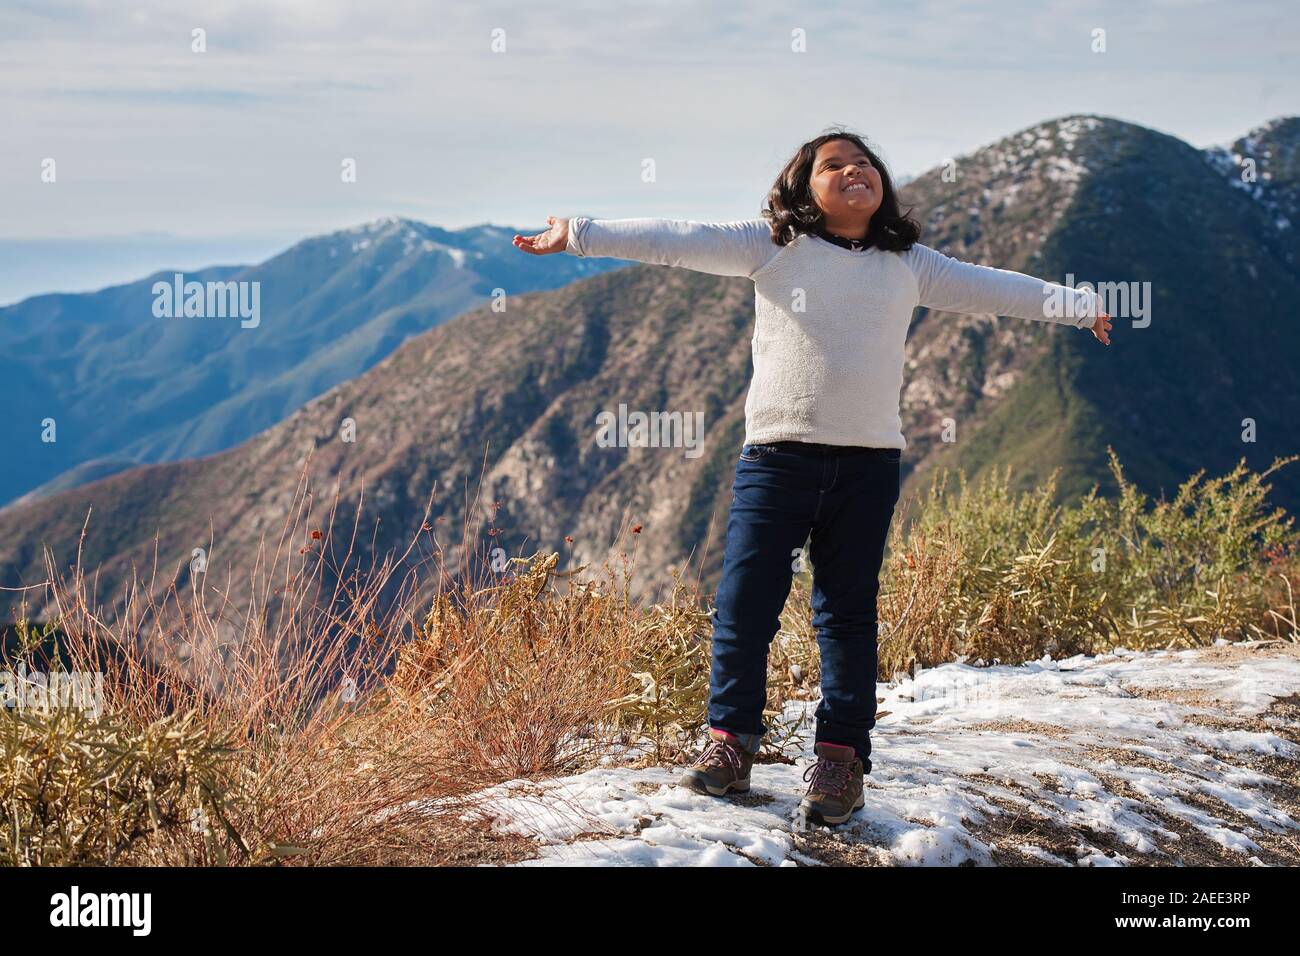 Ein kleines Mädchen am Rande eines schneebedeckten Berg, Freude ausdrücken nach Erreichen der Wanderwege Gipfel in San Bernardino Berge. Stockfoto